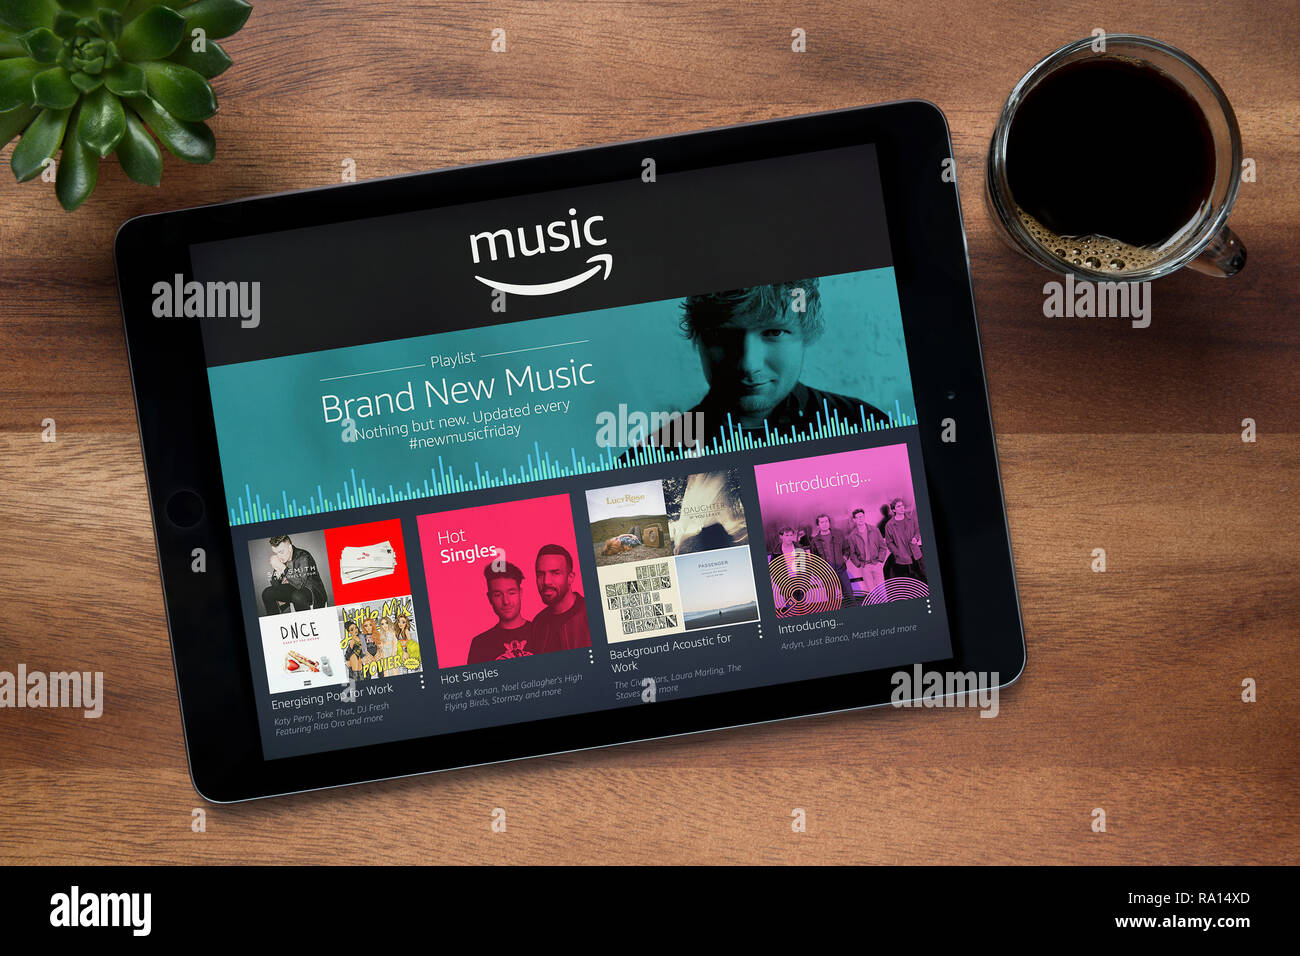 Die Amazon Musik App auf dem iPad Tablet gesehen, auf einer hölzernen Tisch zusammen mit einem Espresso und einem Haus Anlage (nur redaktionelle Nutzung). Stockfoto